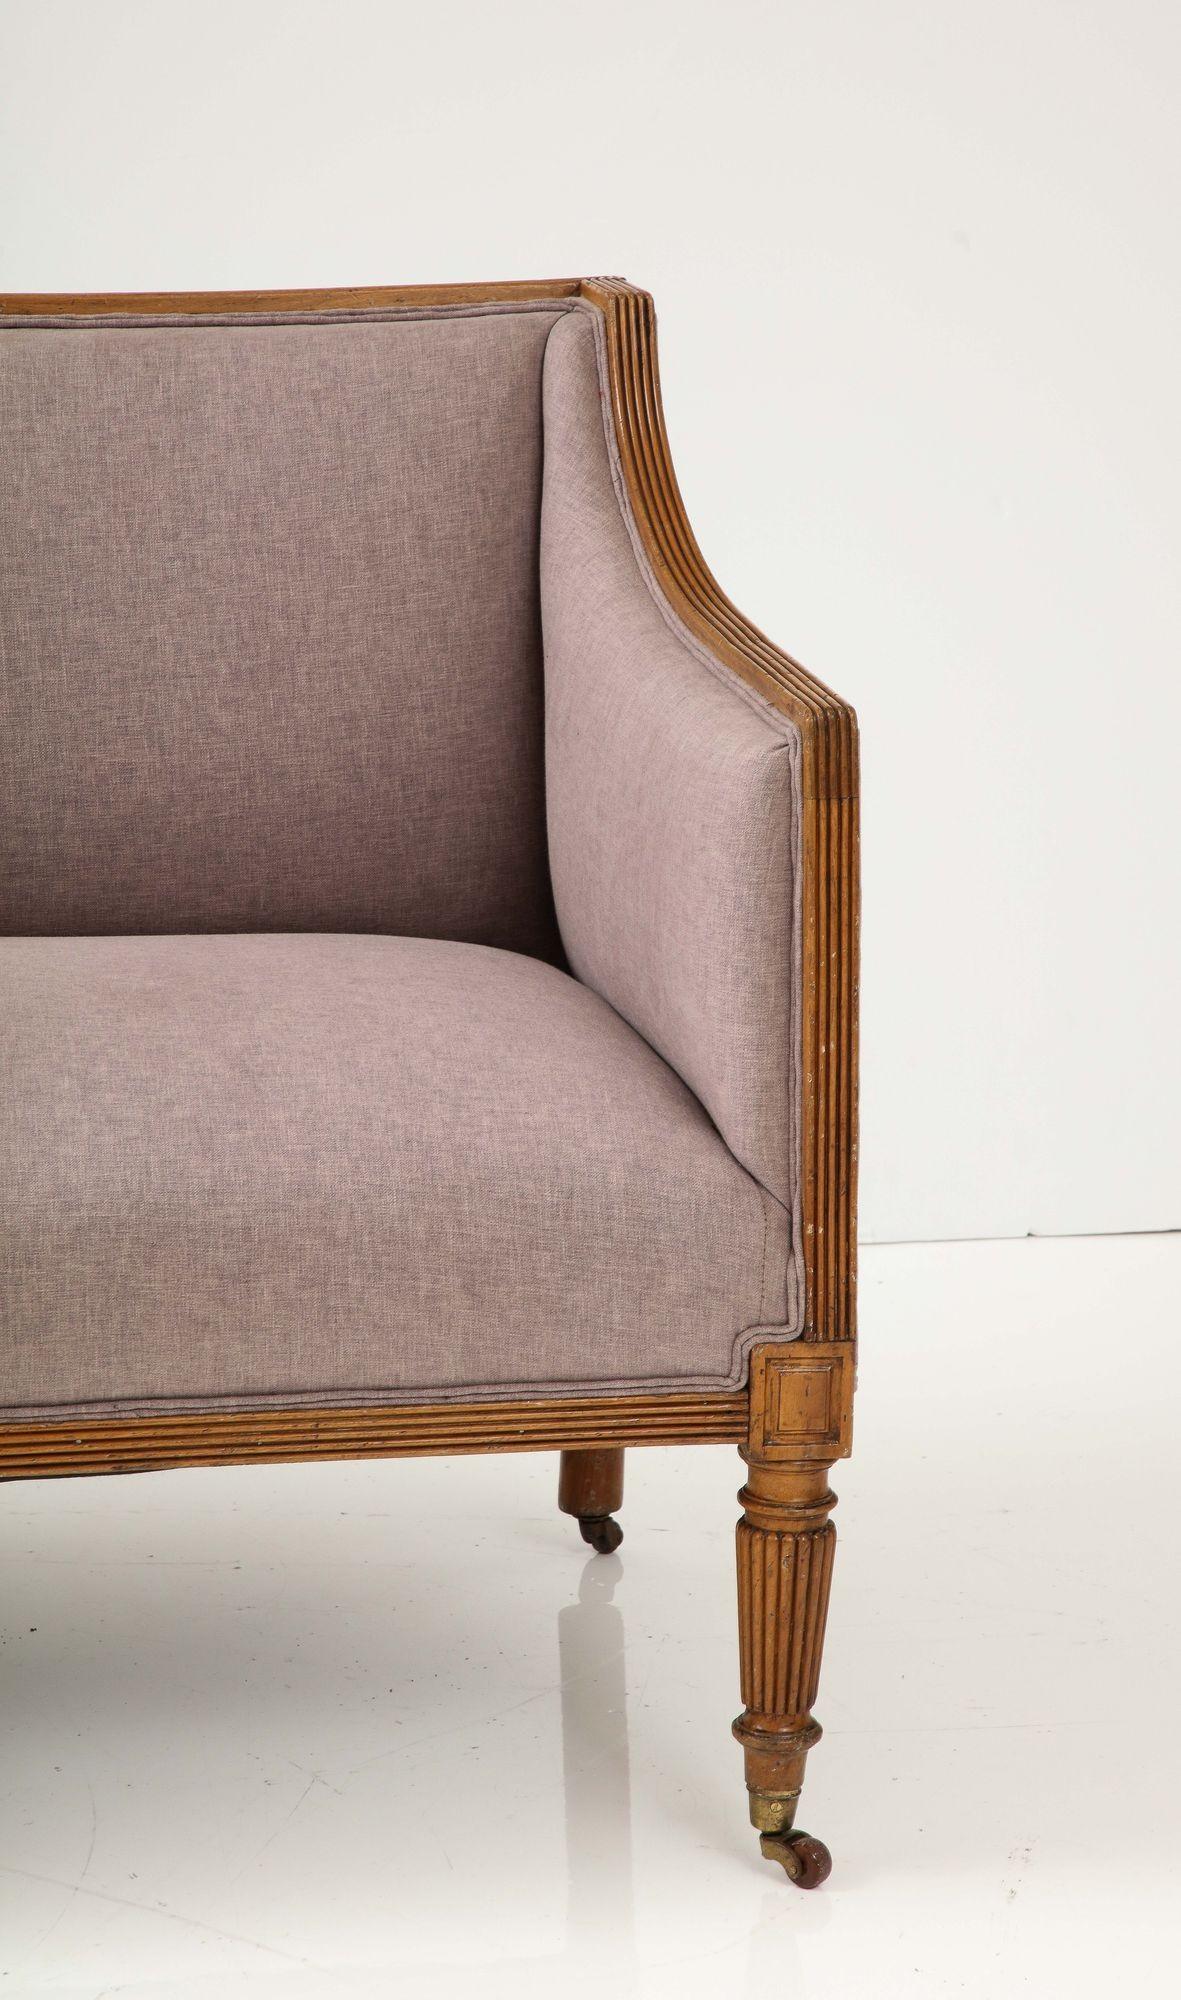 Erleben Sie die Eleganz der englischen Regency-Ära mit diesem exquisiten Sessel mit quadratischer Lehne aus Obstholz aus dem frühen 19. Jahrhundert. Mit seinen klassischen, schräg abfallenden Armlehnen und dem sorgfältig gearbeiteten Rahmen aus